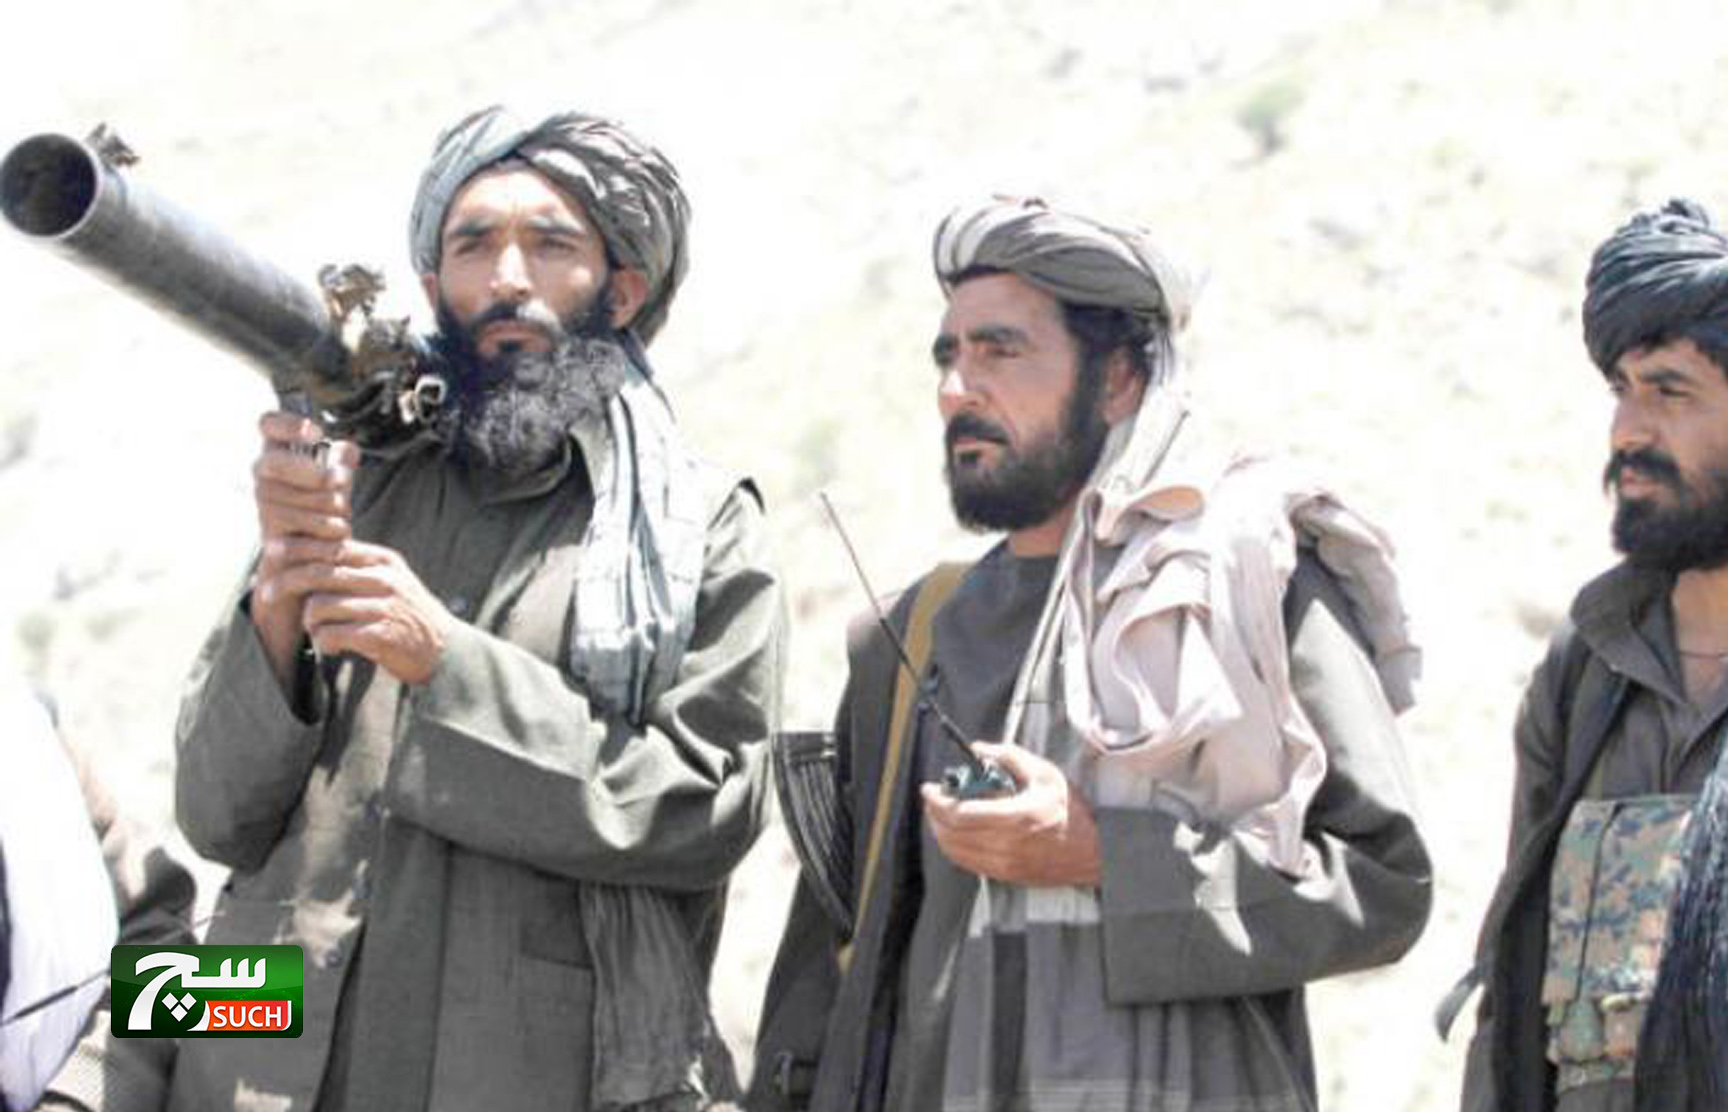 طالبان الأفغانية ستلتقي على الأرجح بولي العهد السعودي في باكستان